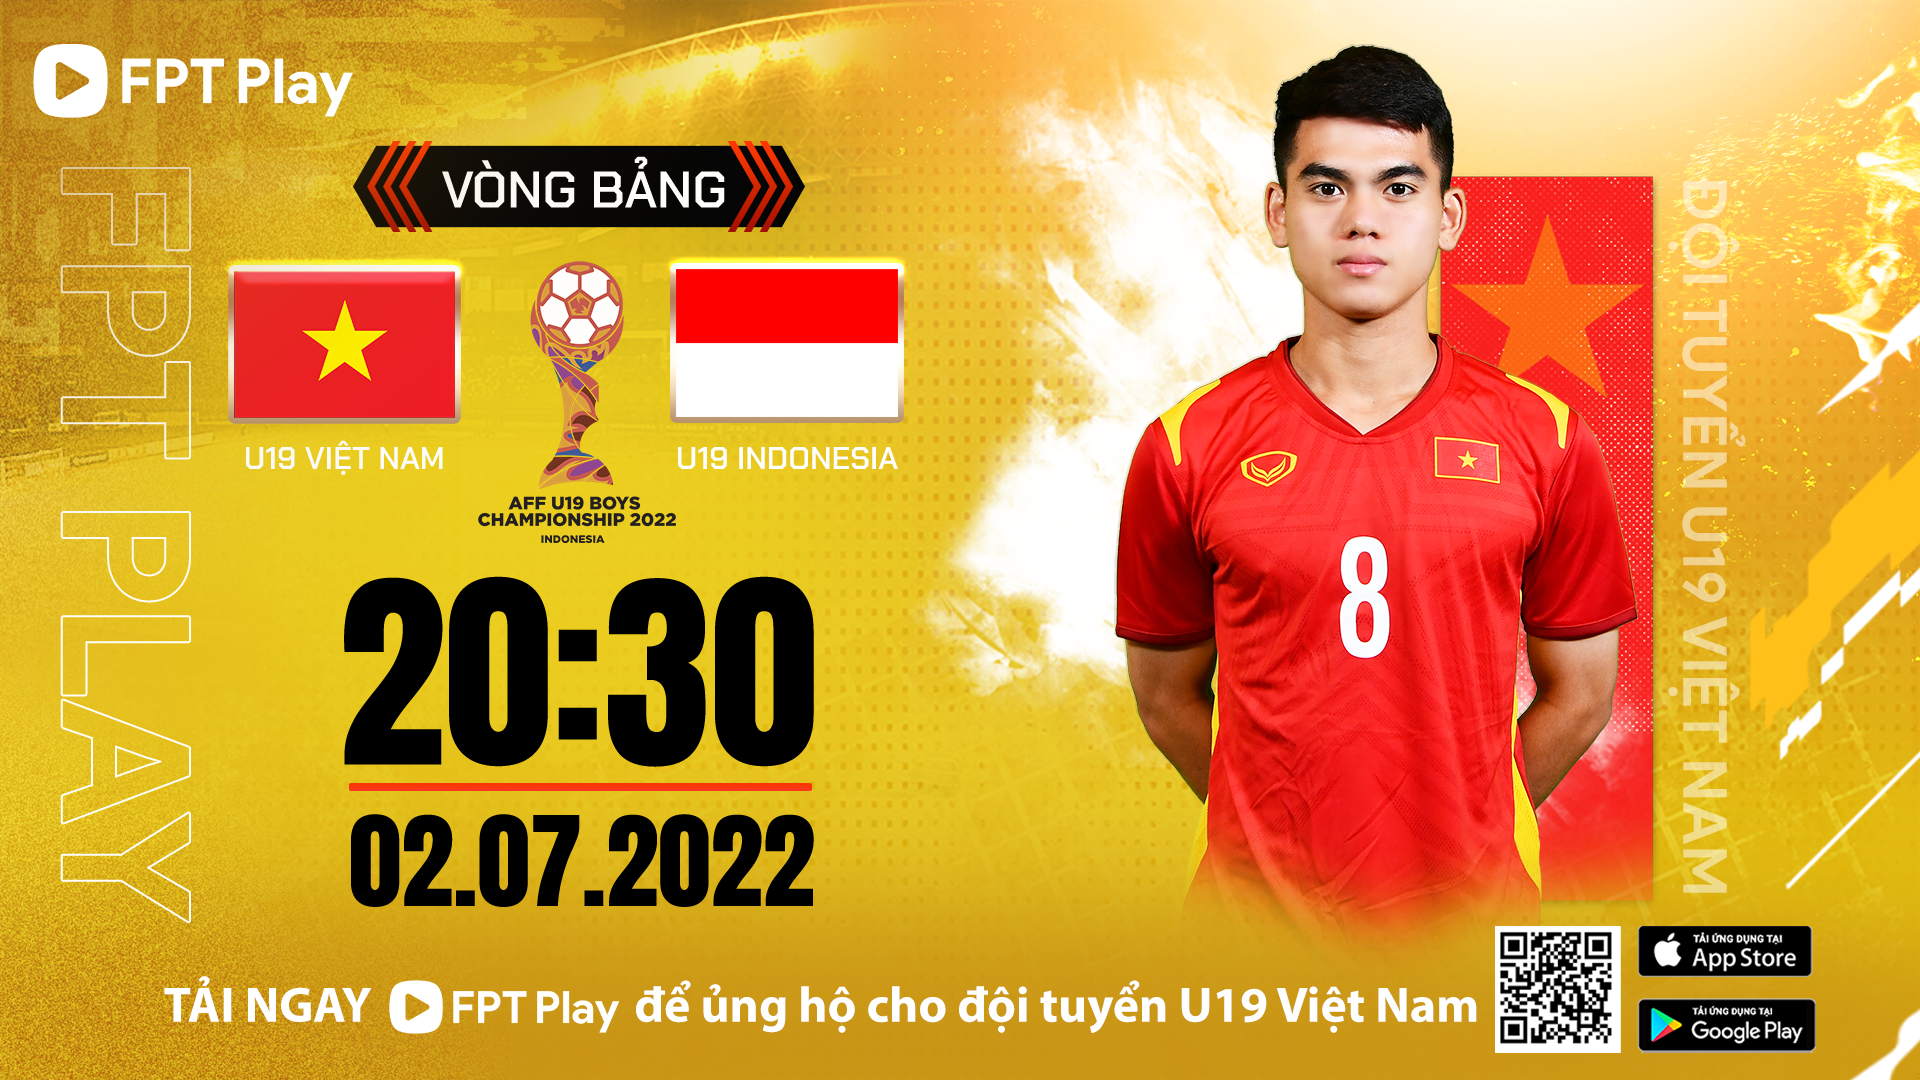 U19 เวียดนามจะพบกับ U19 อินโดนีเซียในวันที่ 2 กรกฎาคม  ภาพถ่าย: “FPT .”